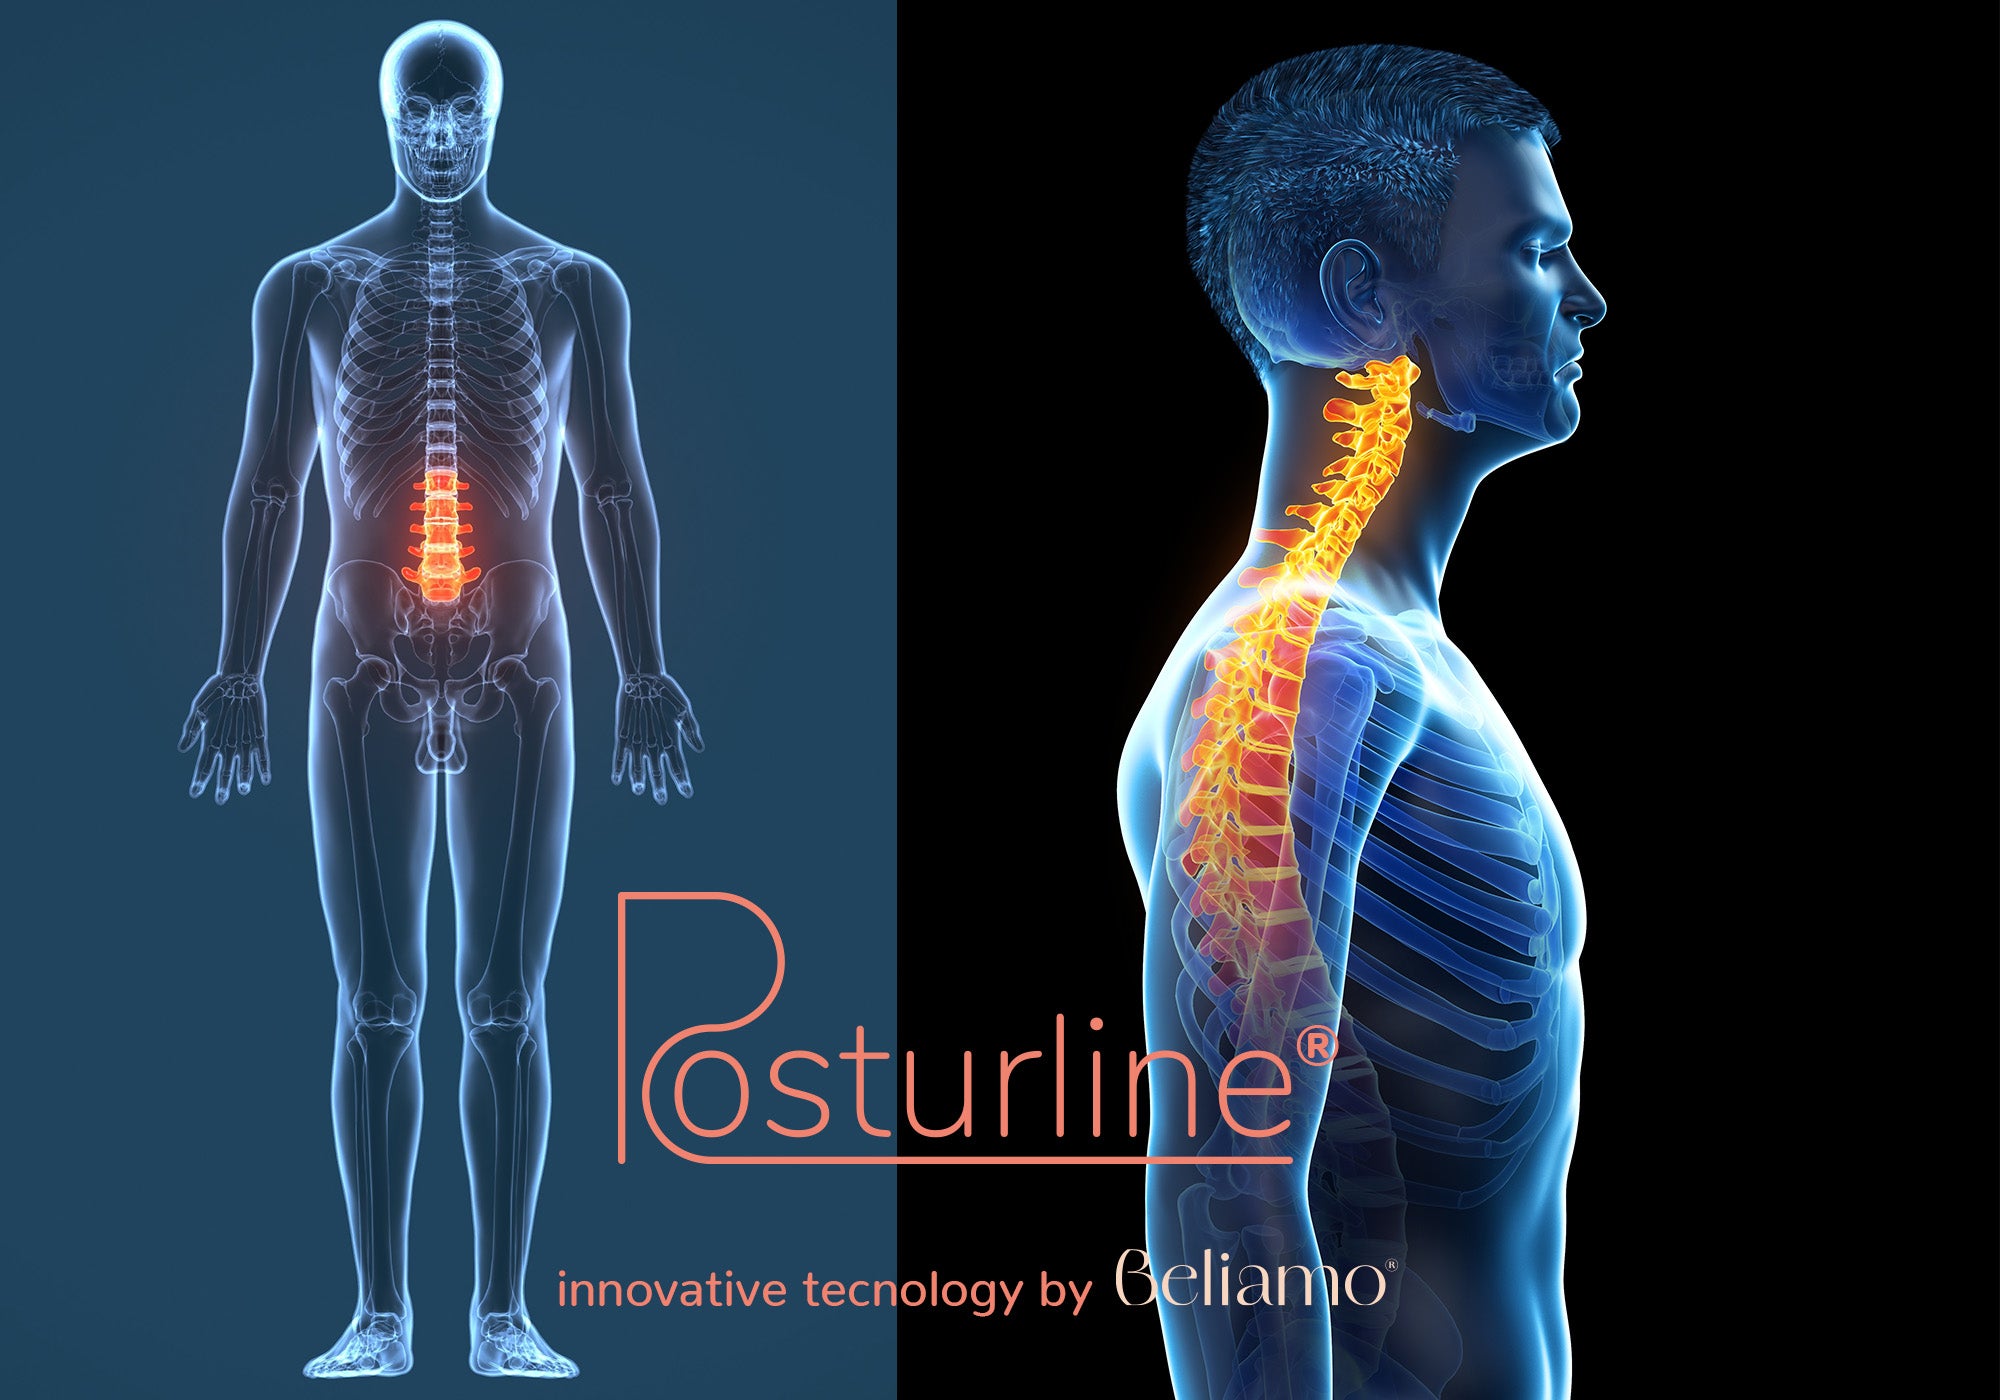 Allineamento spinale tramite tecnologia PosturLine di Beliamo, che mostra come il materasso supporta ergonomicamente la colonna vertebrale per un comfort ottimale e una postura corretta durante il sonno